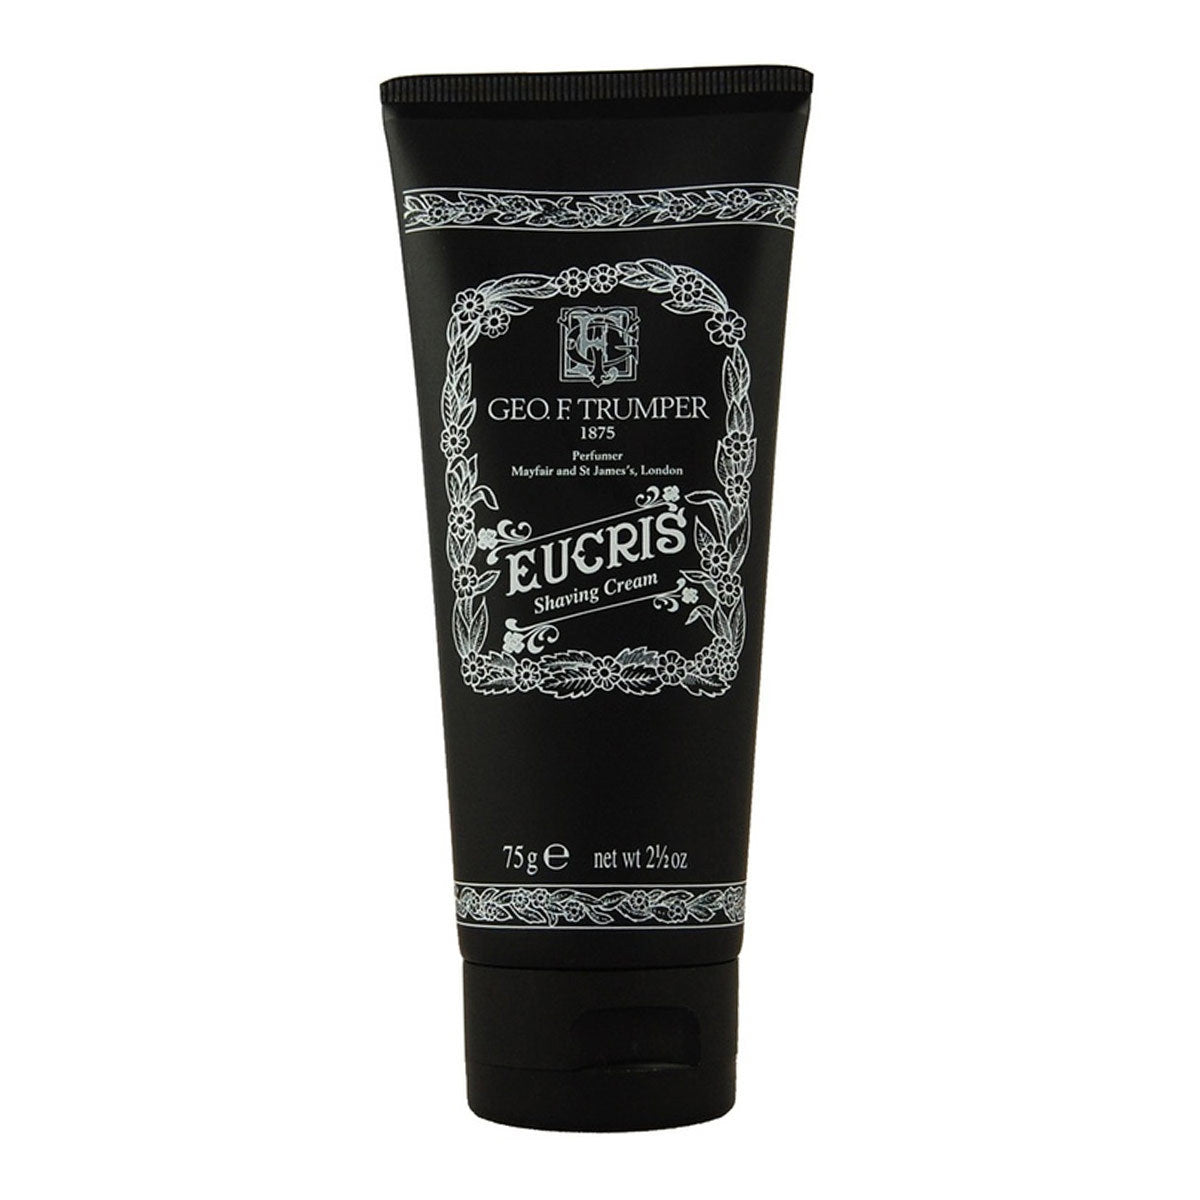 Primary image of Eucris Shaving Cream